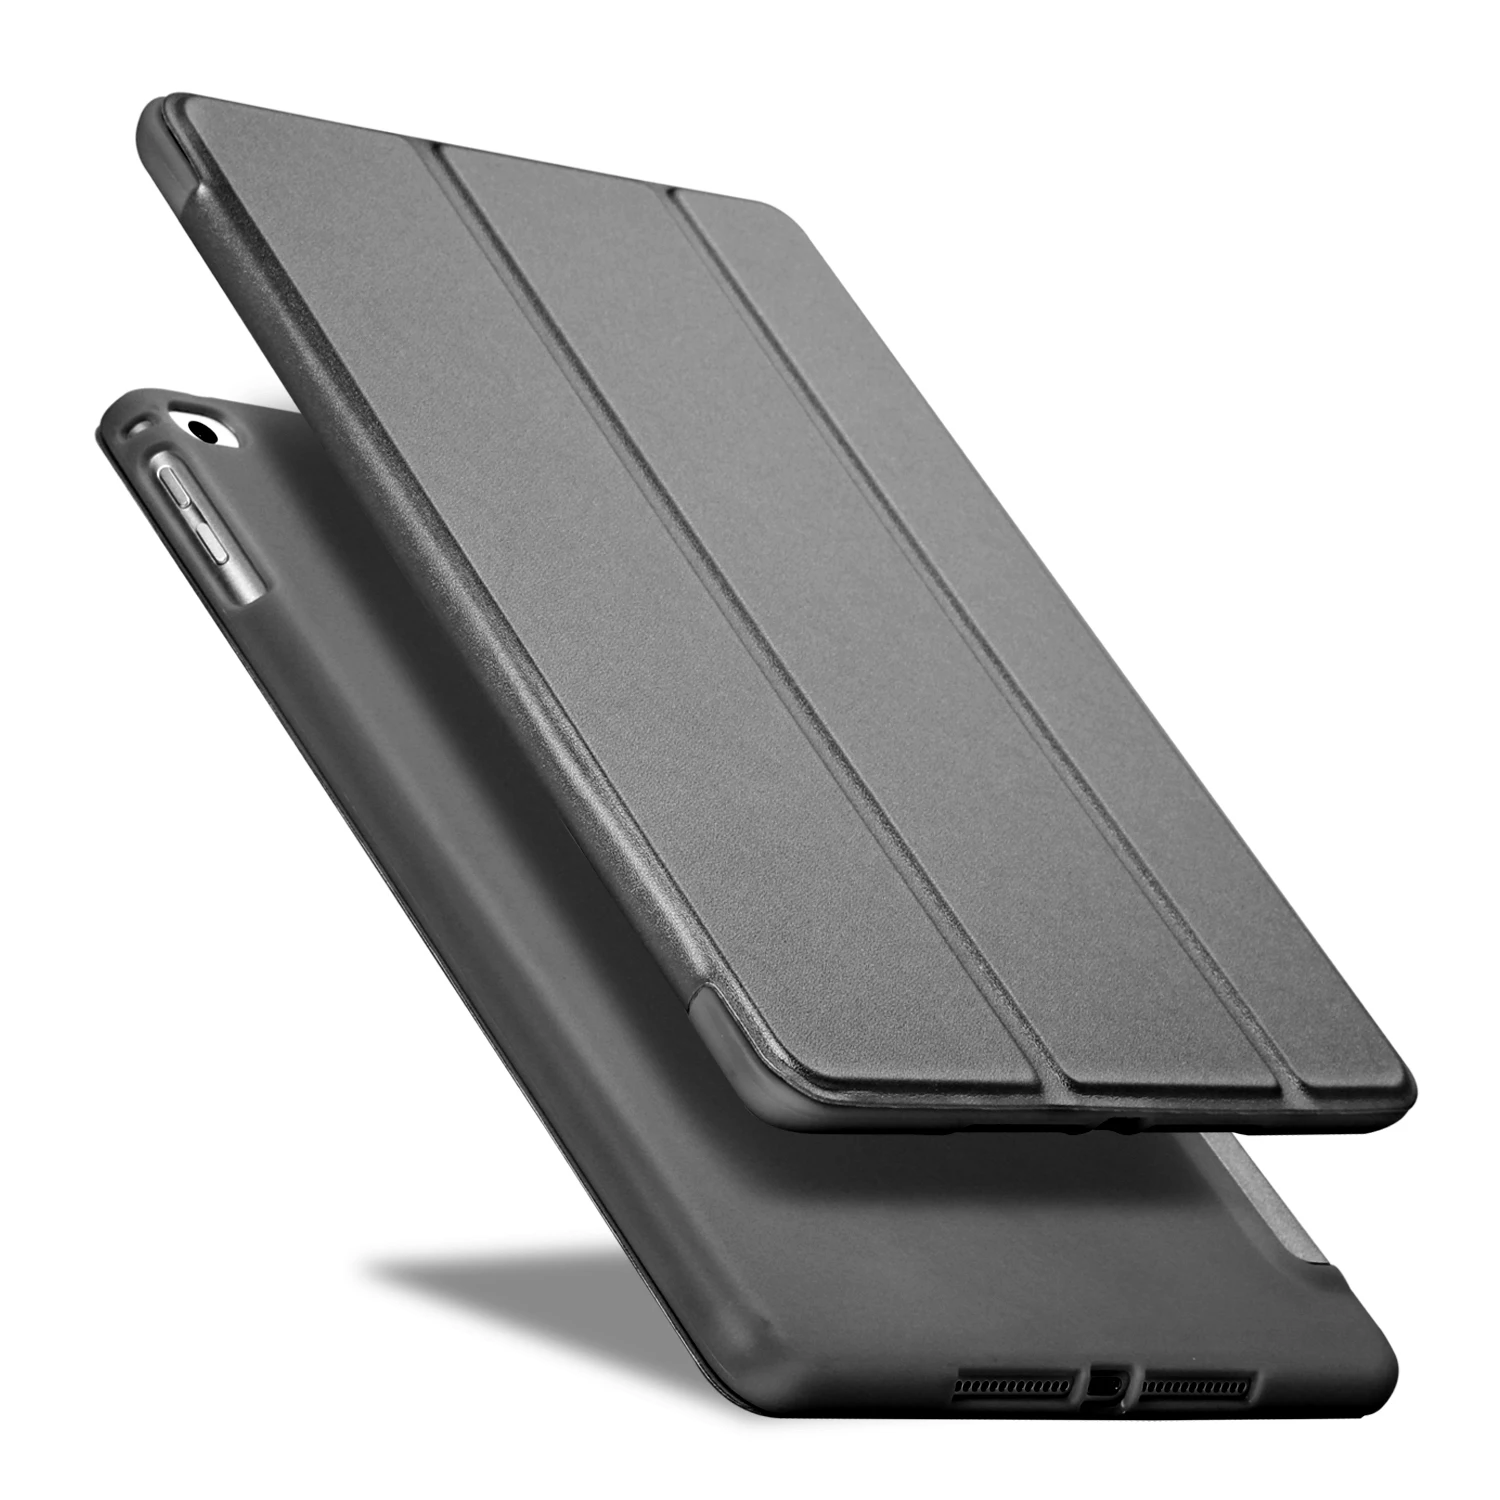 PFHEU Чехол для iPad 9,7 / A1822 A1893 силиконовый мягкий чехол из искусственной кожи для iPad Air 1/Air 2 - Цвет: Черный